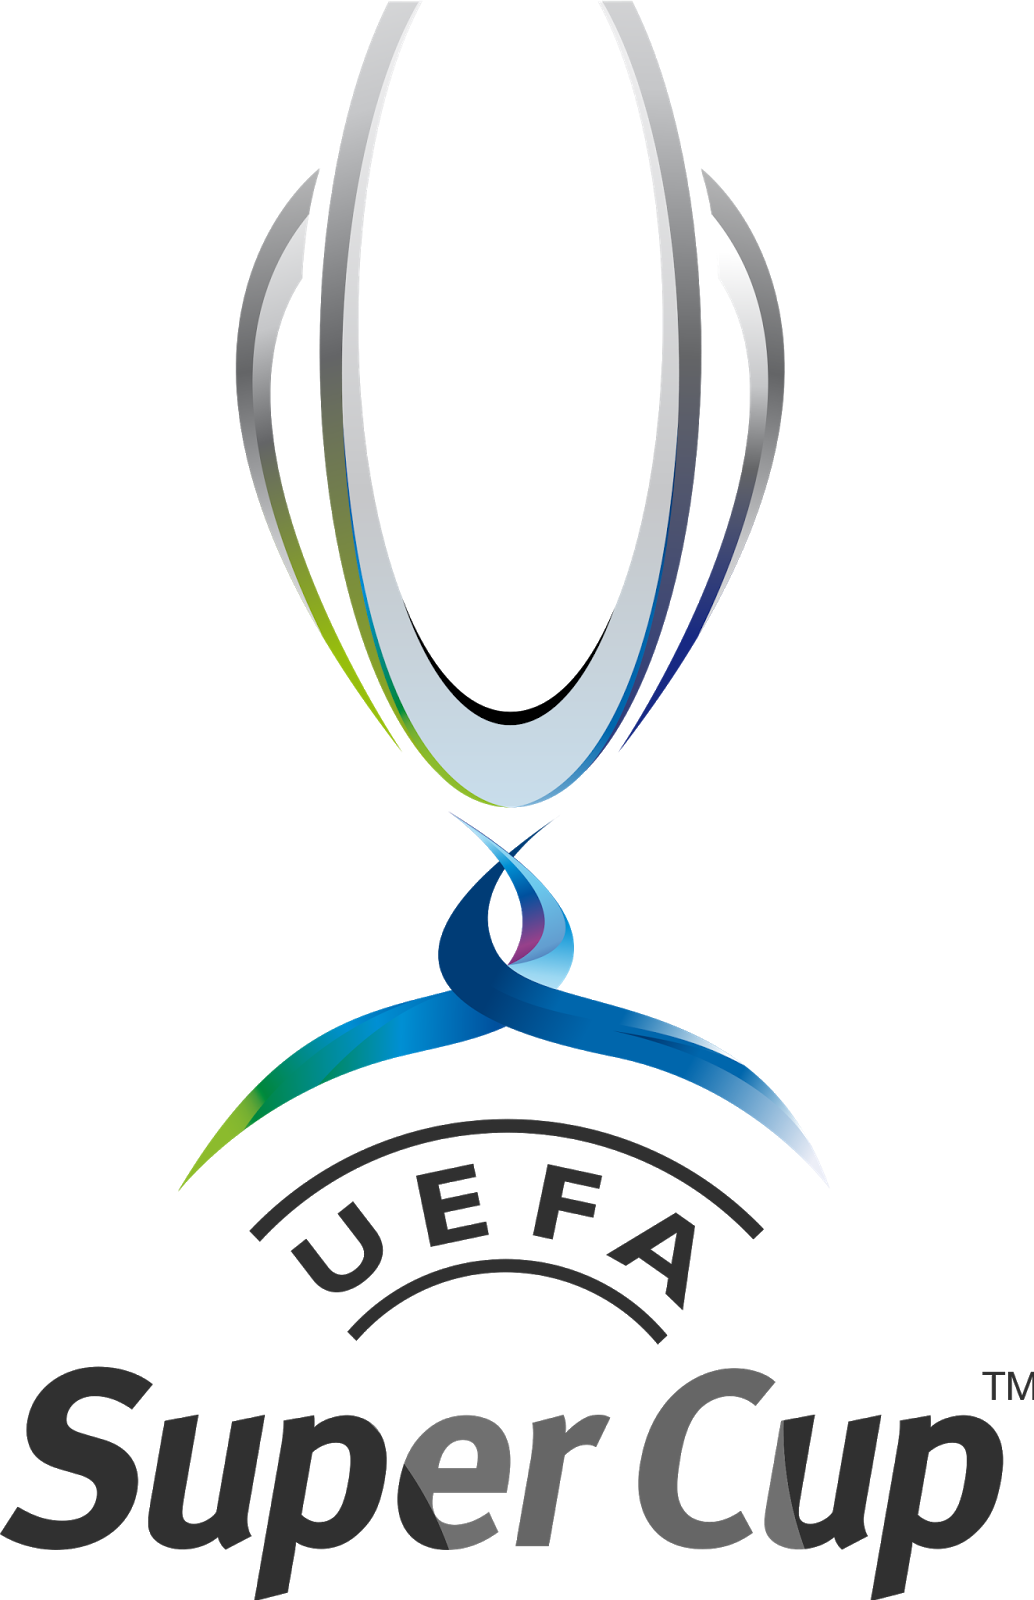 Суперкубок УЕФА